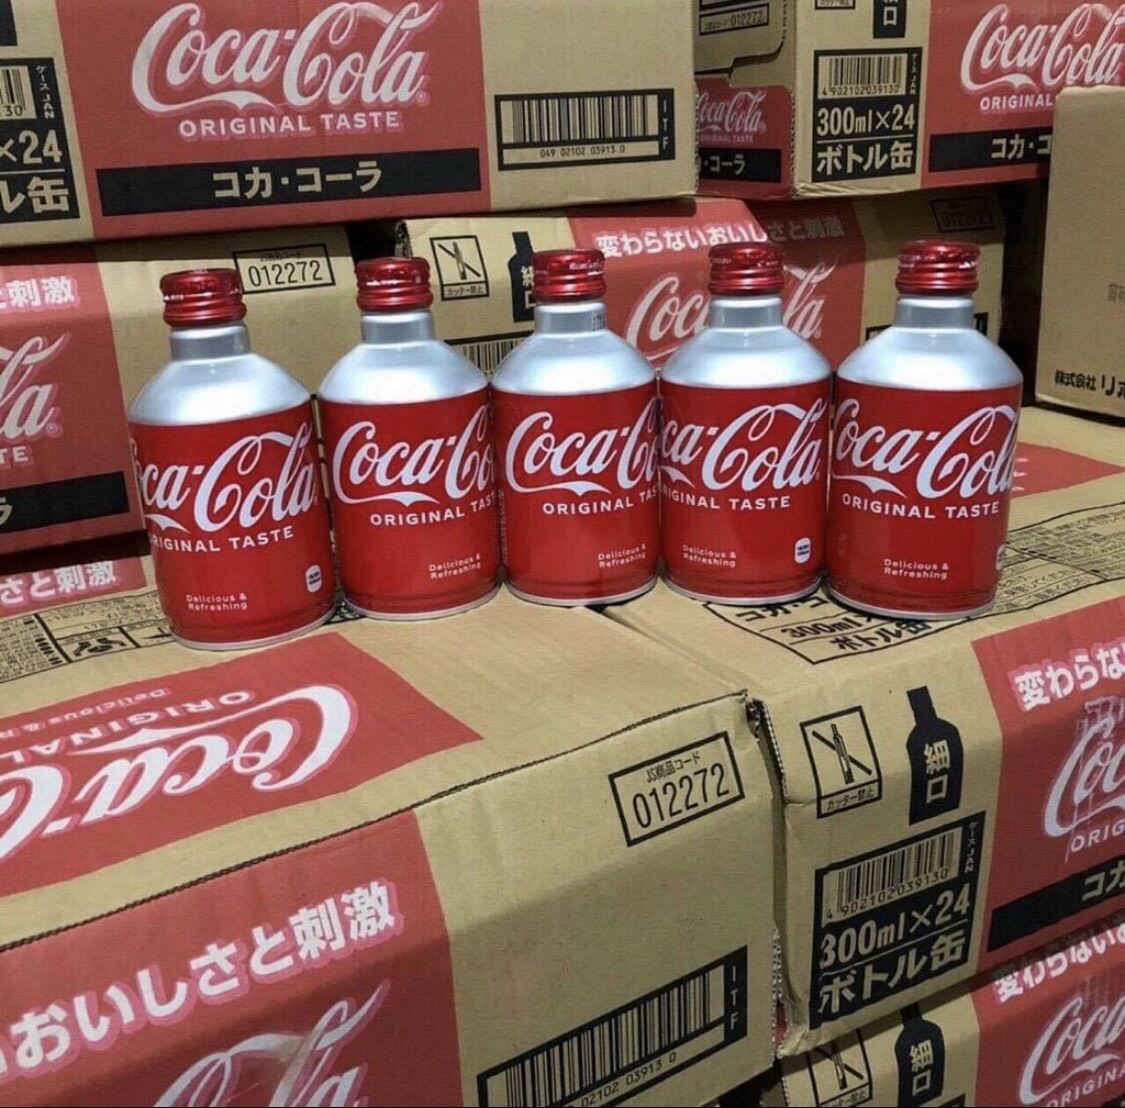 Coca cola chai nhôm nắp vặn ⚡ LOẠI ĐẶC BIỆT ⚡ Nước Coca chai nhôm mini kiểu nắp vặn 300ml Nhập khẩu Nhật Bản siêu ngon